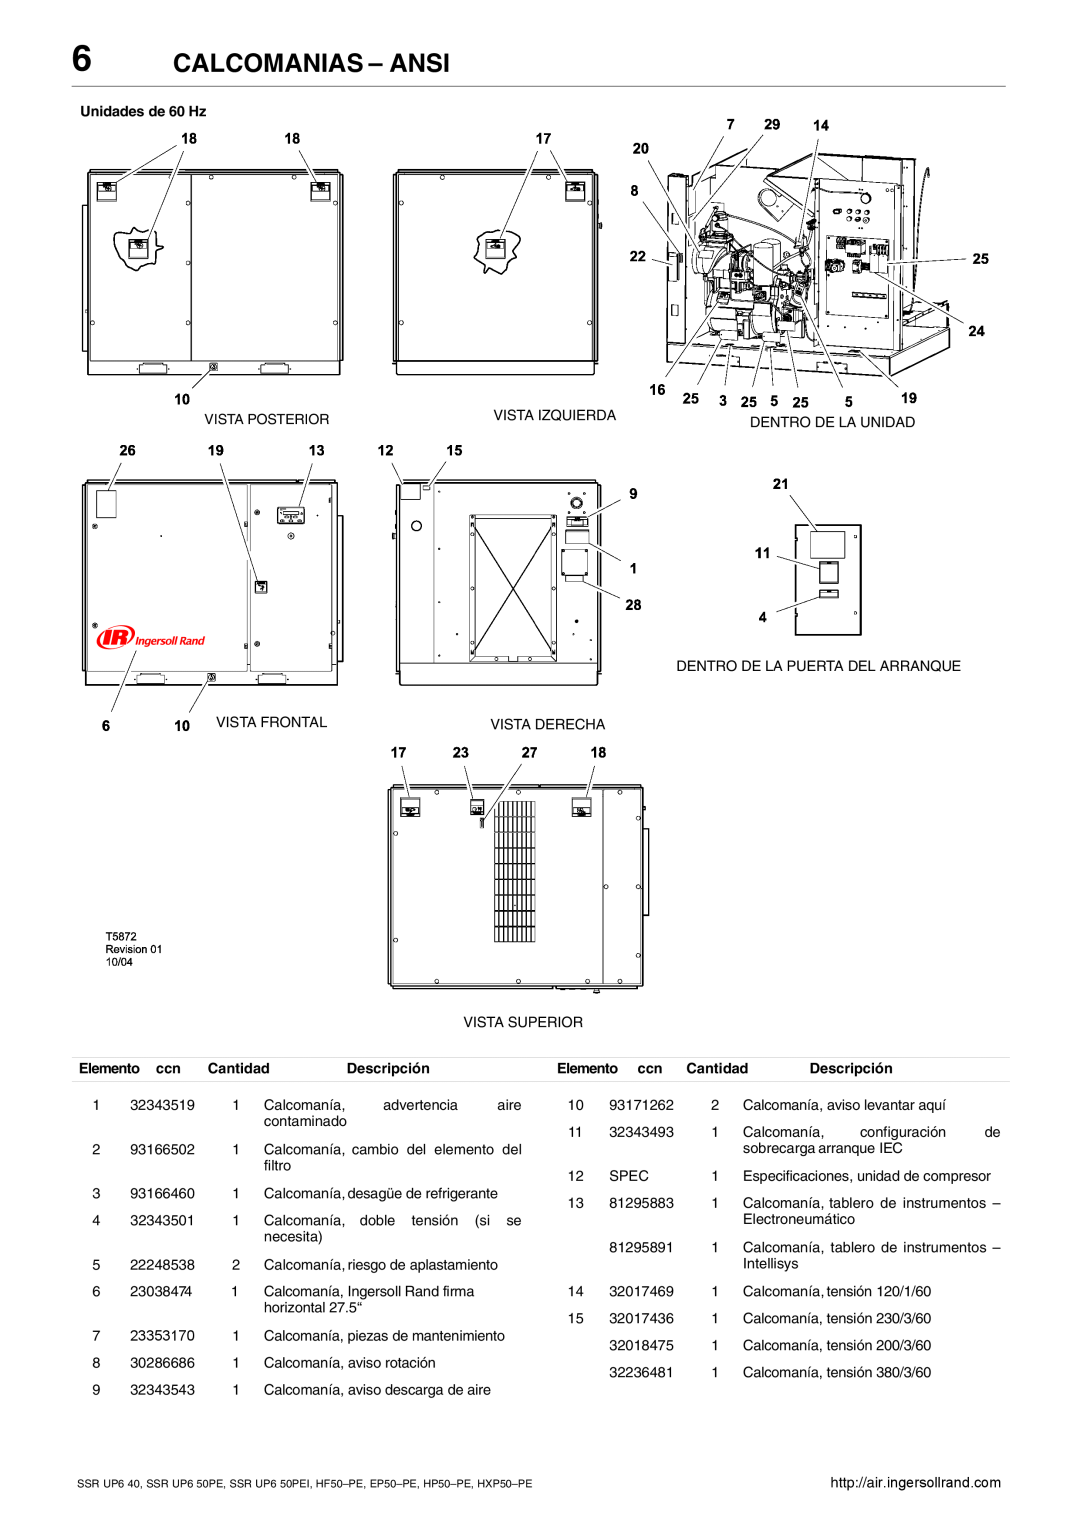 Ingersoll-Rand HXP50-PE, SSR UP6 40 manual Calcomanias - Ansi, Unidades de 60 Hz, Descripción, Elemento ccn Cantidad 